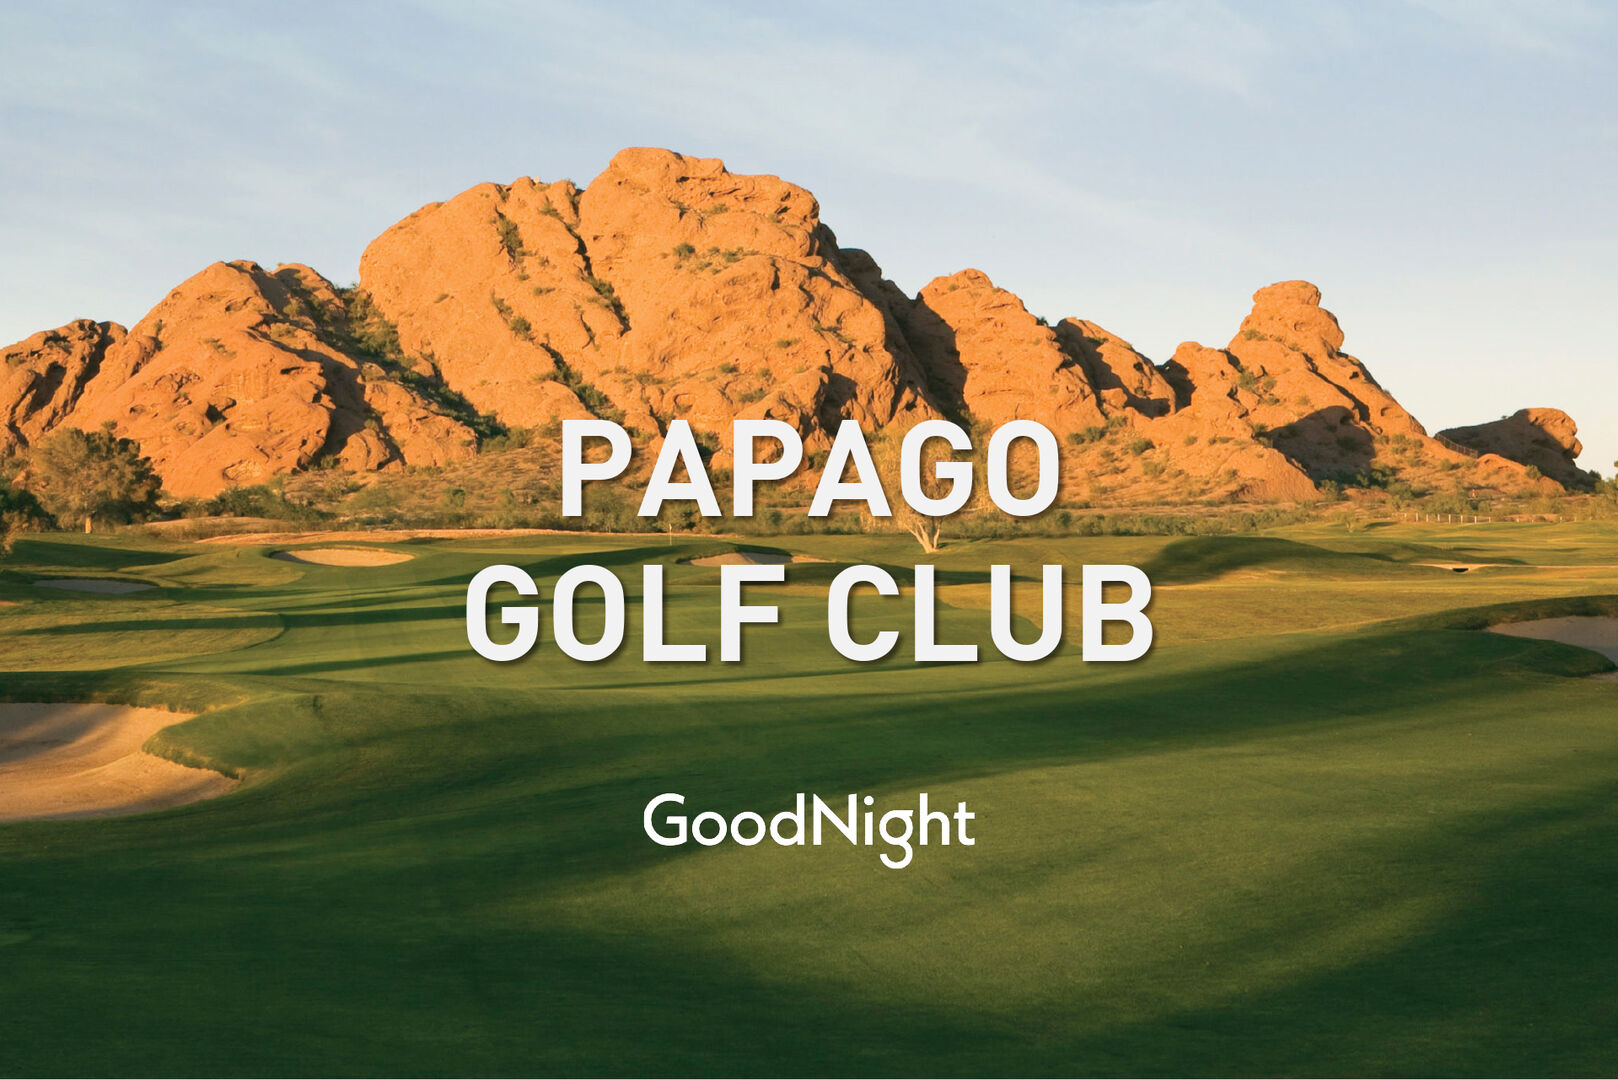 24 mins: Papago Golf Club